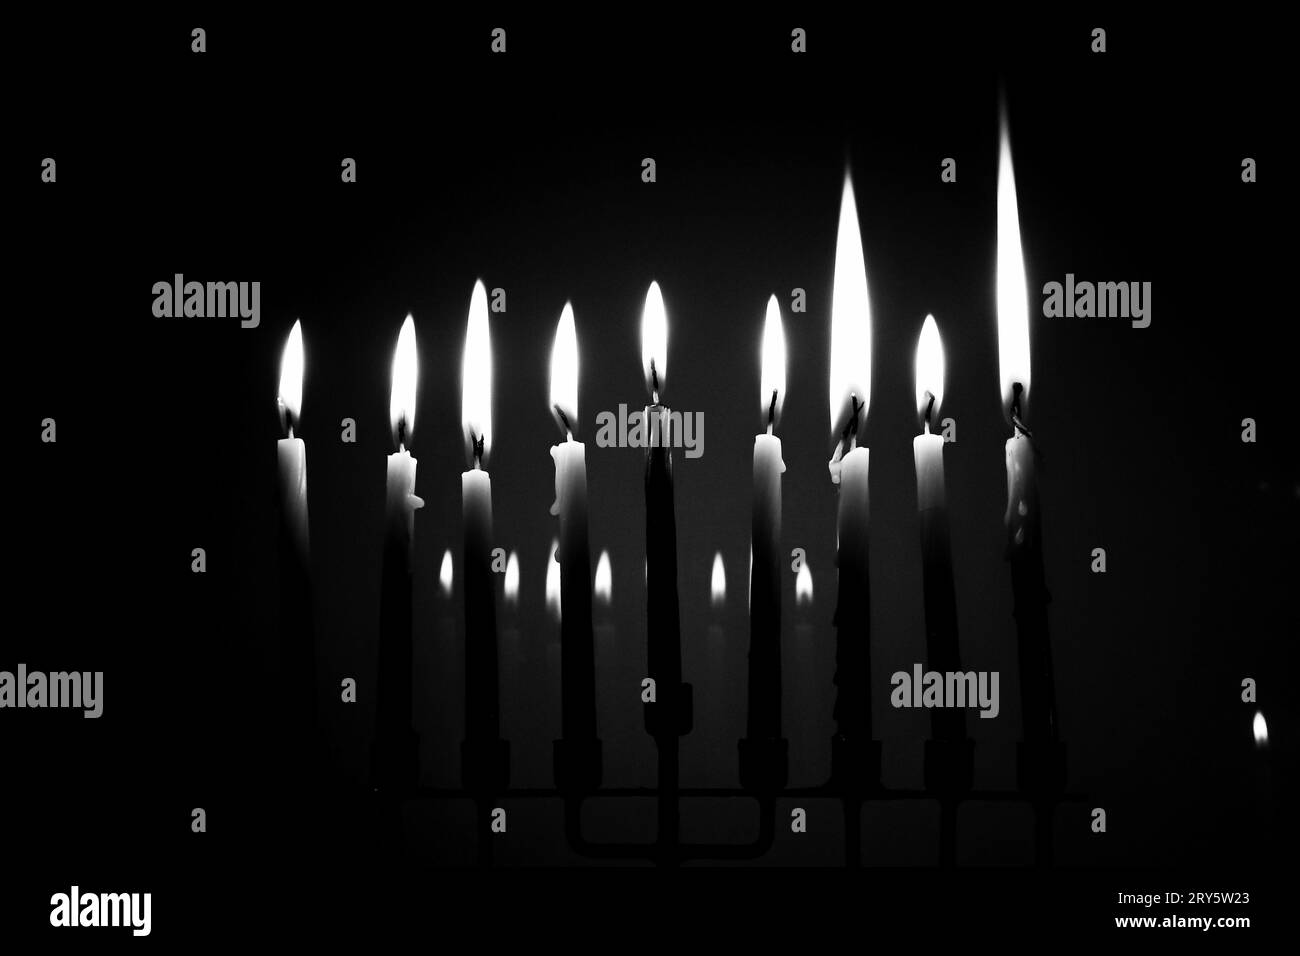 Schwarz-weiß volle Menora am letzten Abend von Hanukka. Alle neun Kerzen werden in einem dunklen Raum beleuchtet und spiegeln sich im Hintergrund. Urlaubskonzept Stockfoto